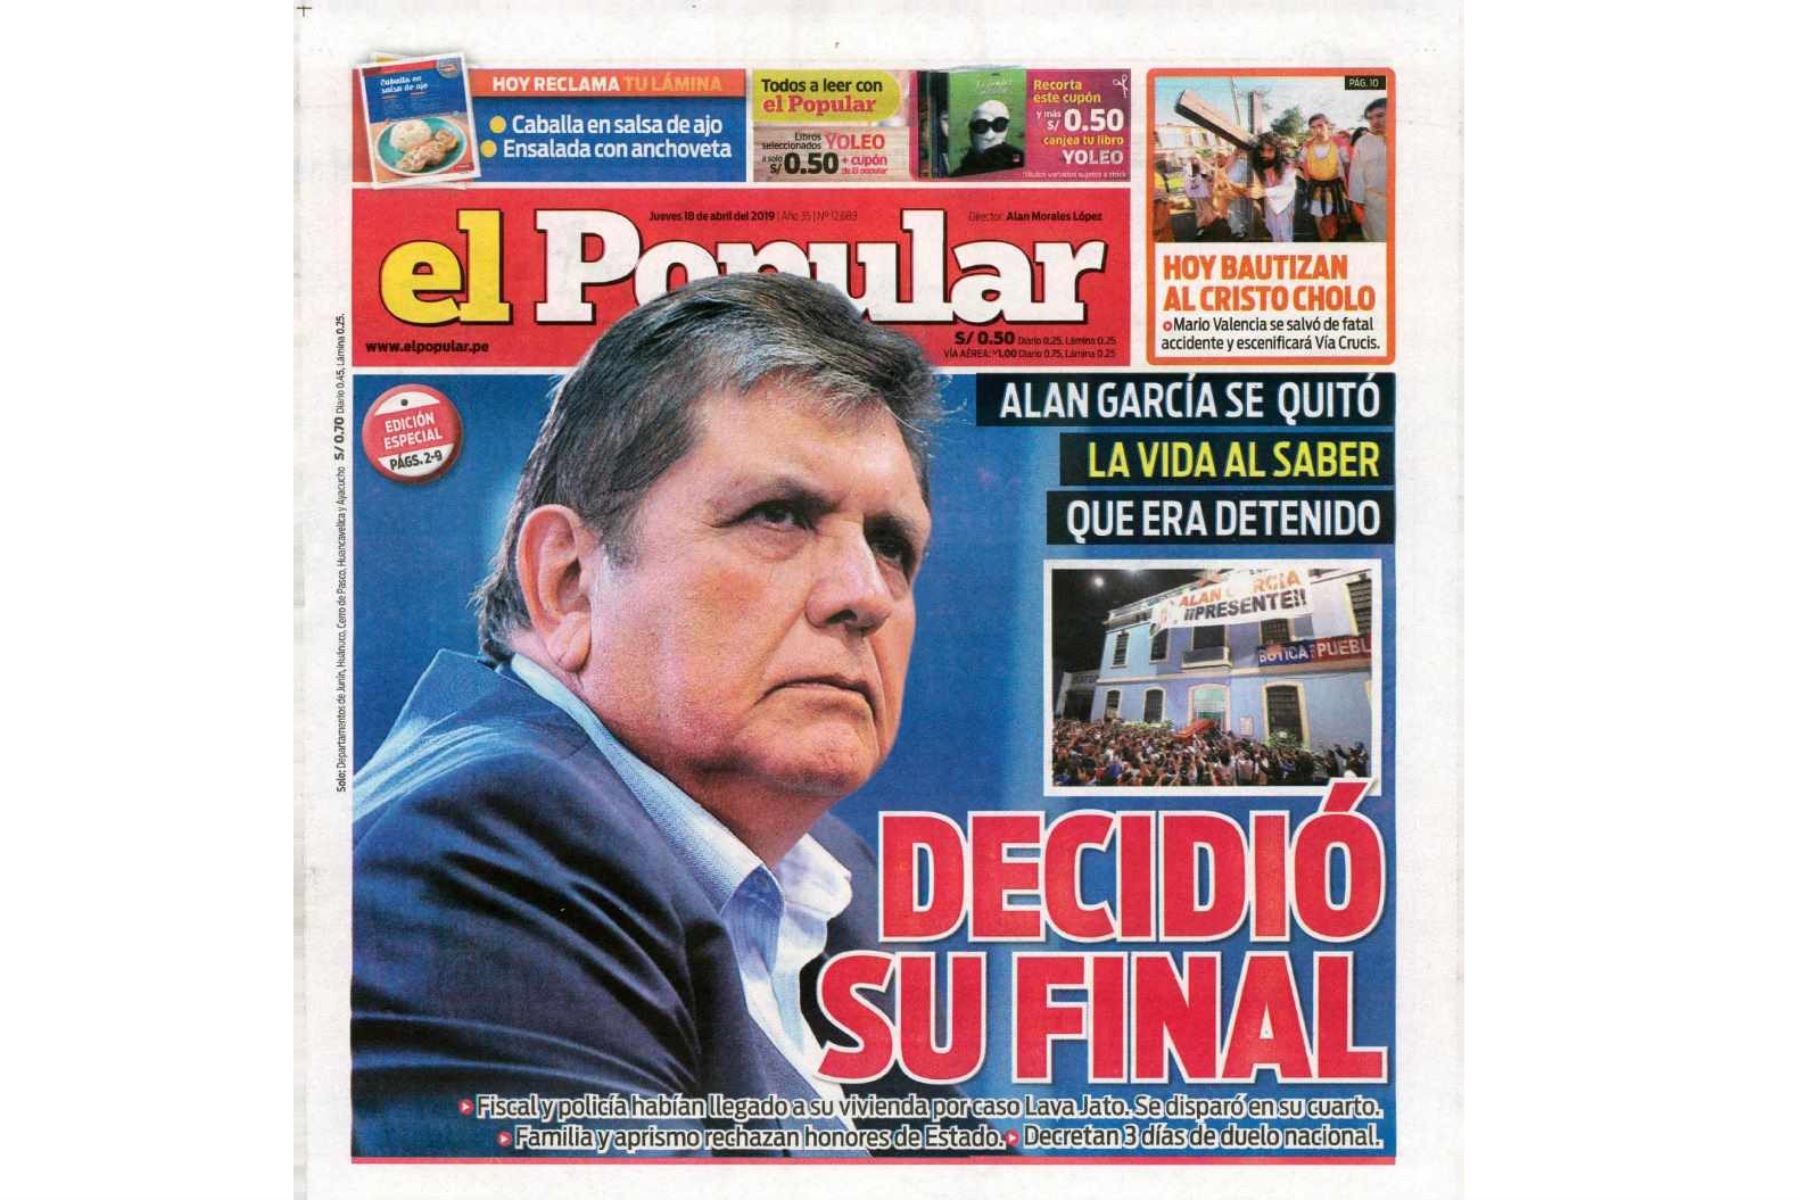 Alan García: Las portadas de los diarios peruanos| Galería Fotográfica |  Agencia Peruana de Noticias Andina